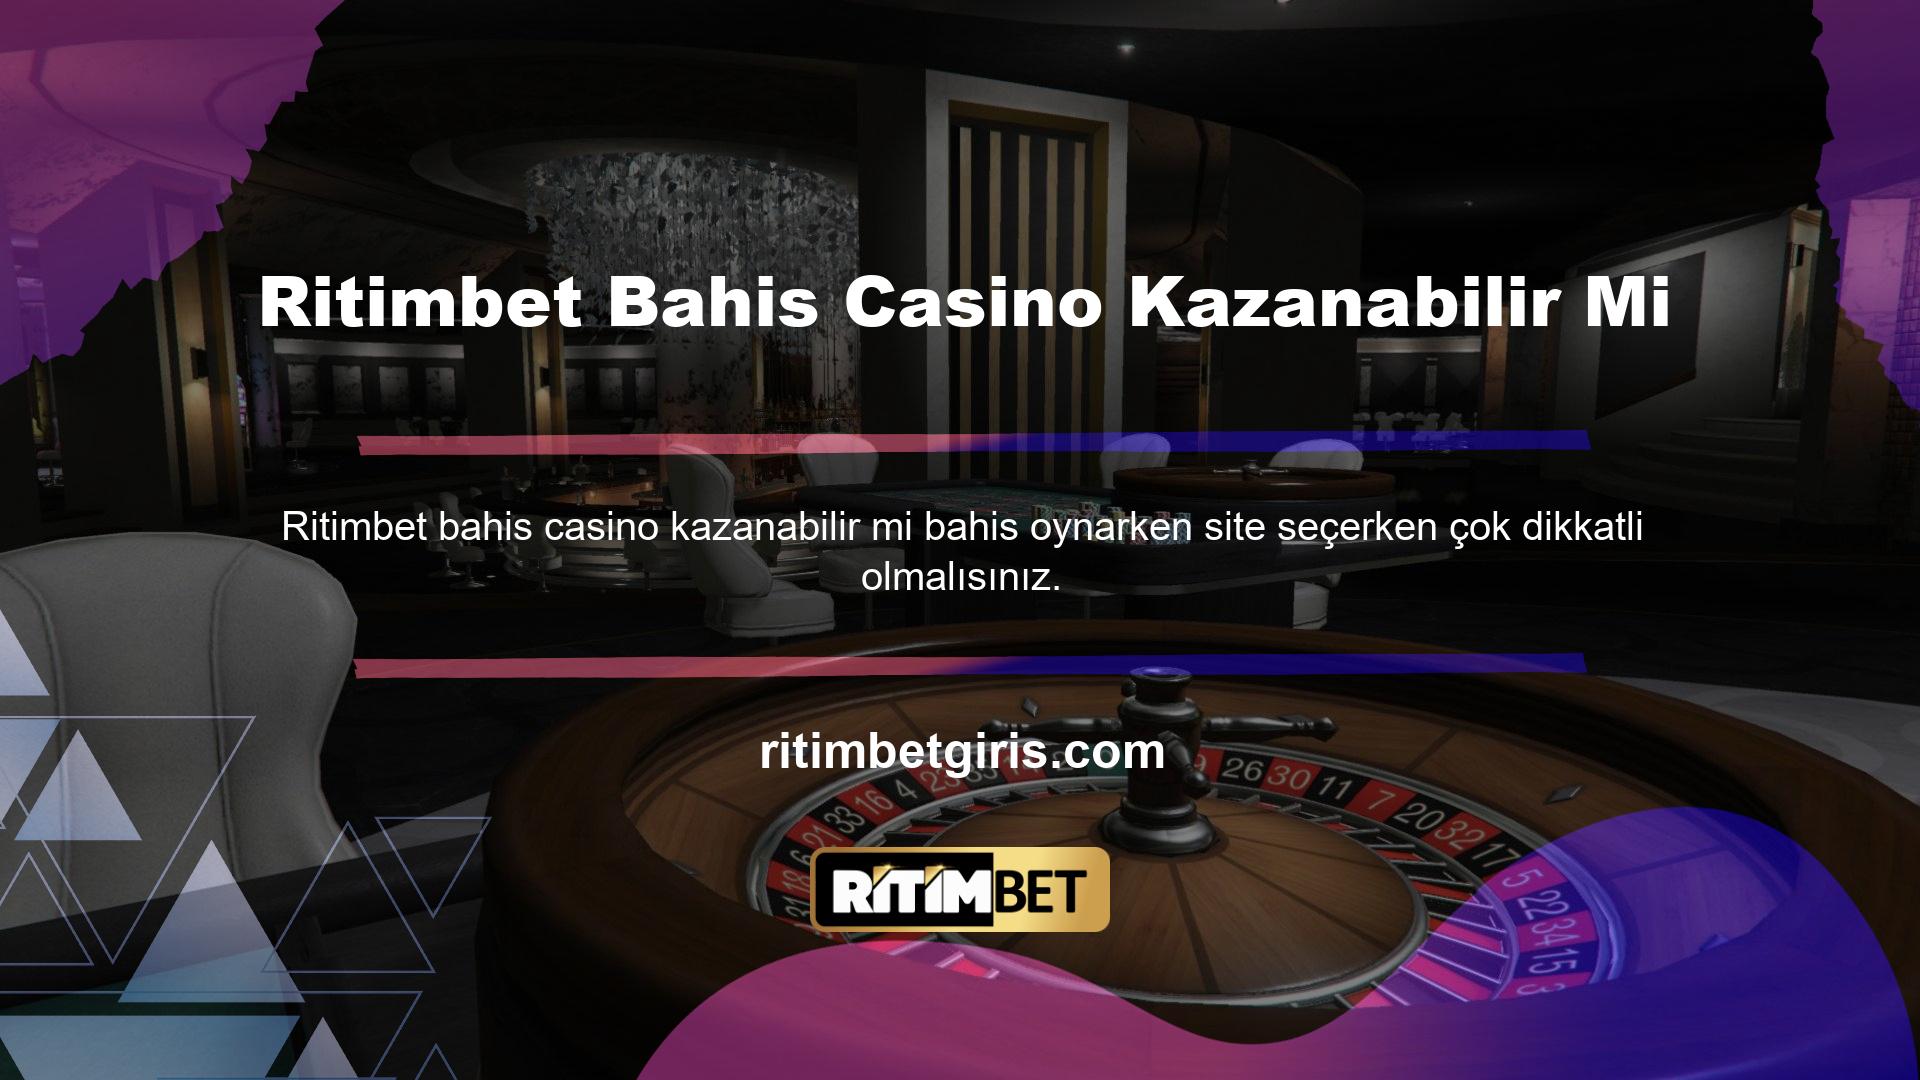 Bazı casino siteleri, kullanıcıların para kazanmasını engeller